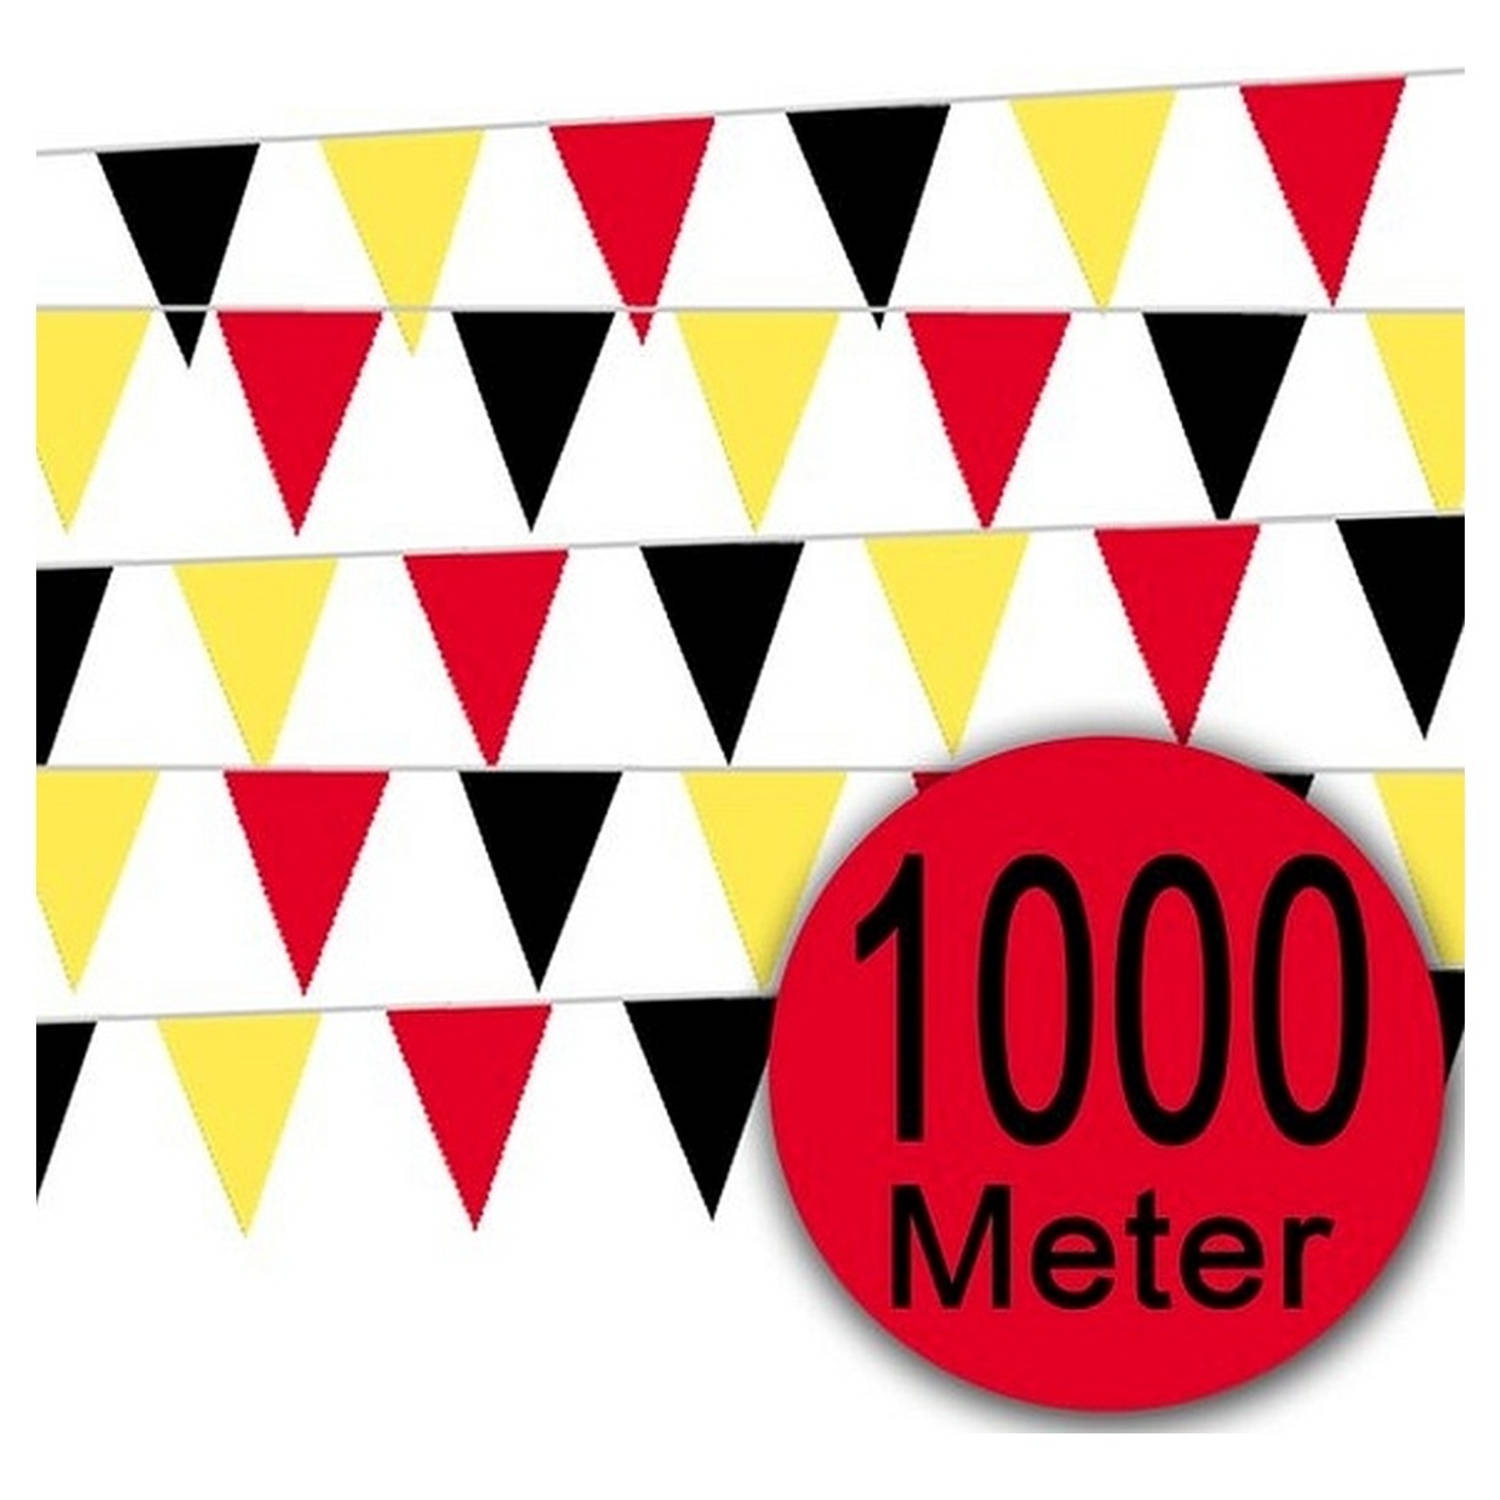 Vlaggenlijn 1000 Meter Belgisch Elftal Wk Voetbal